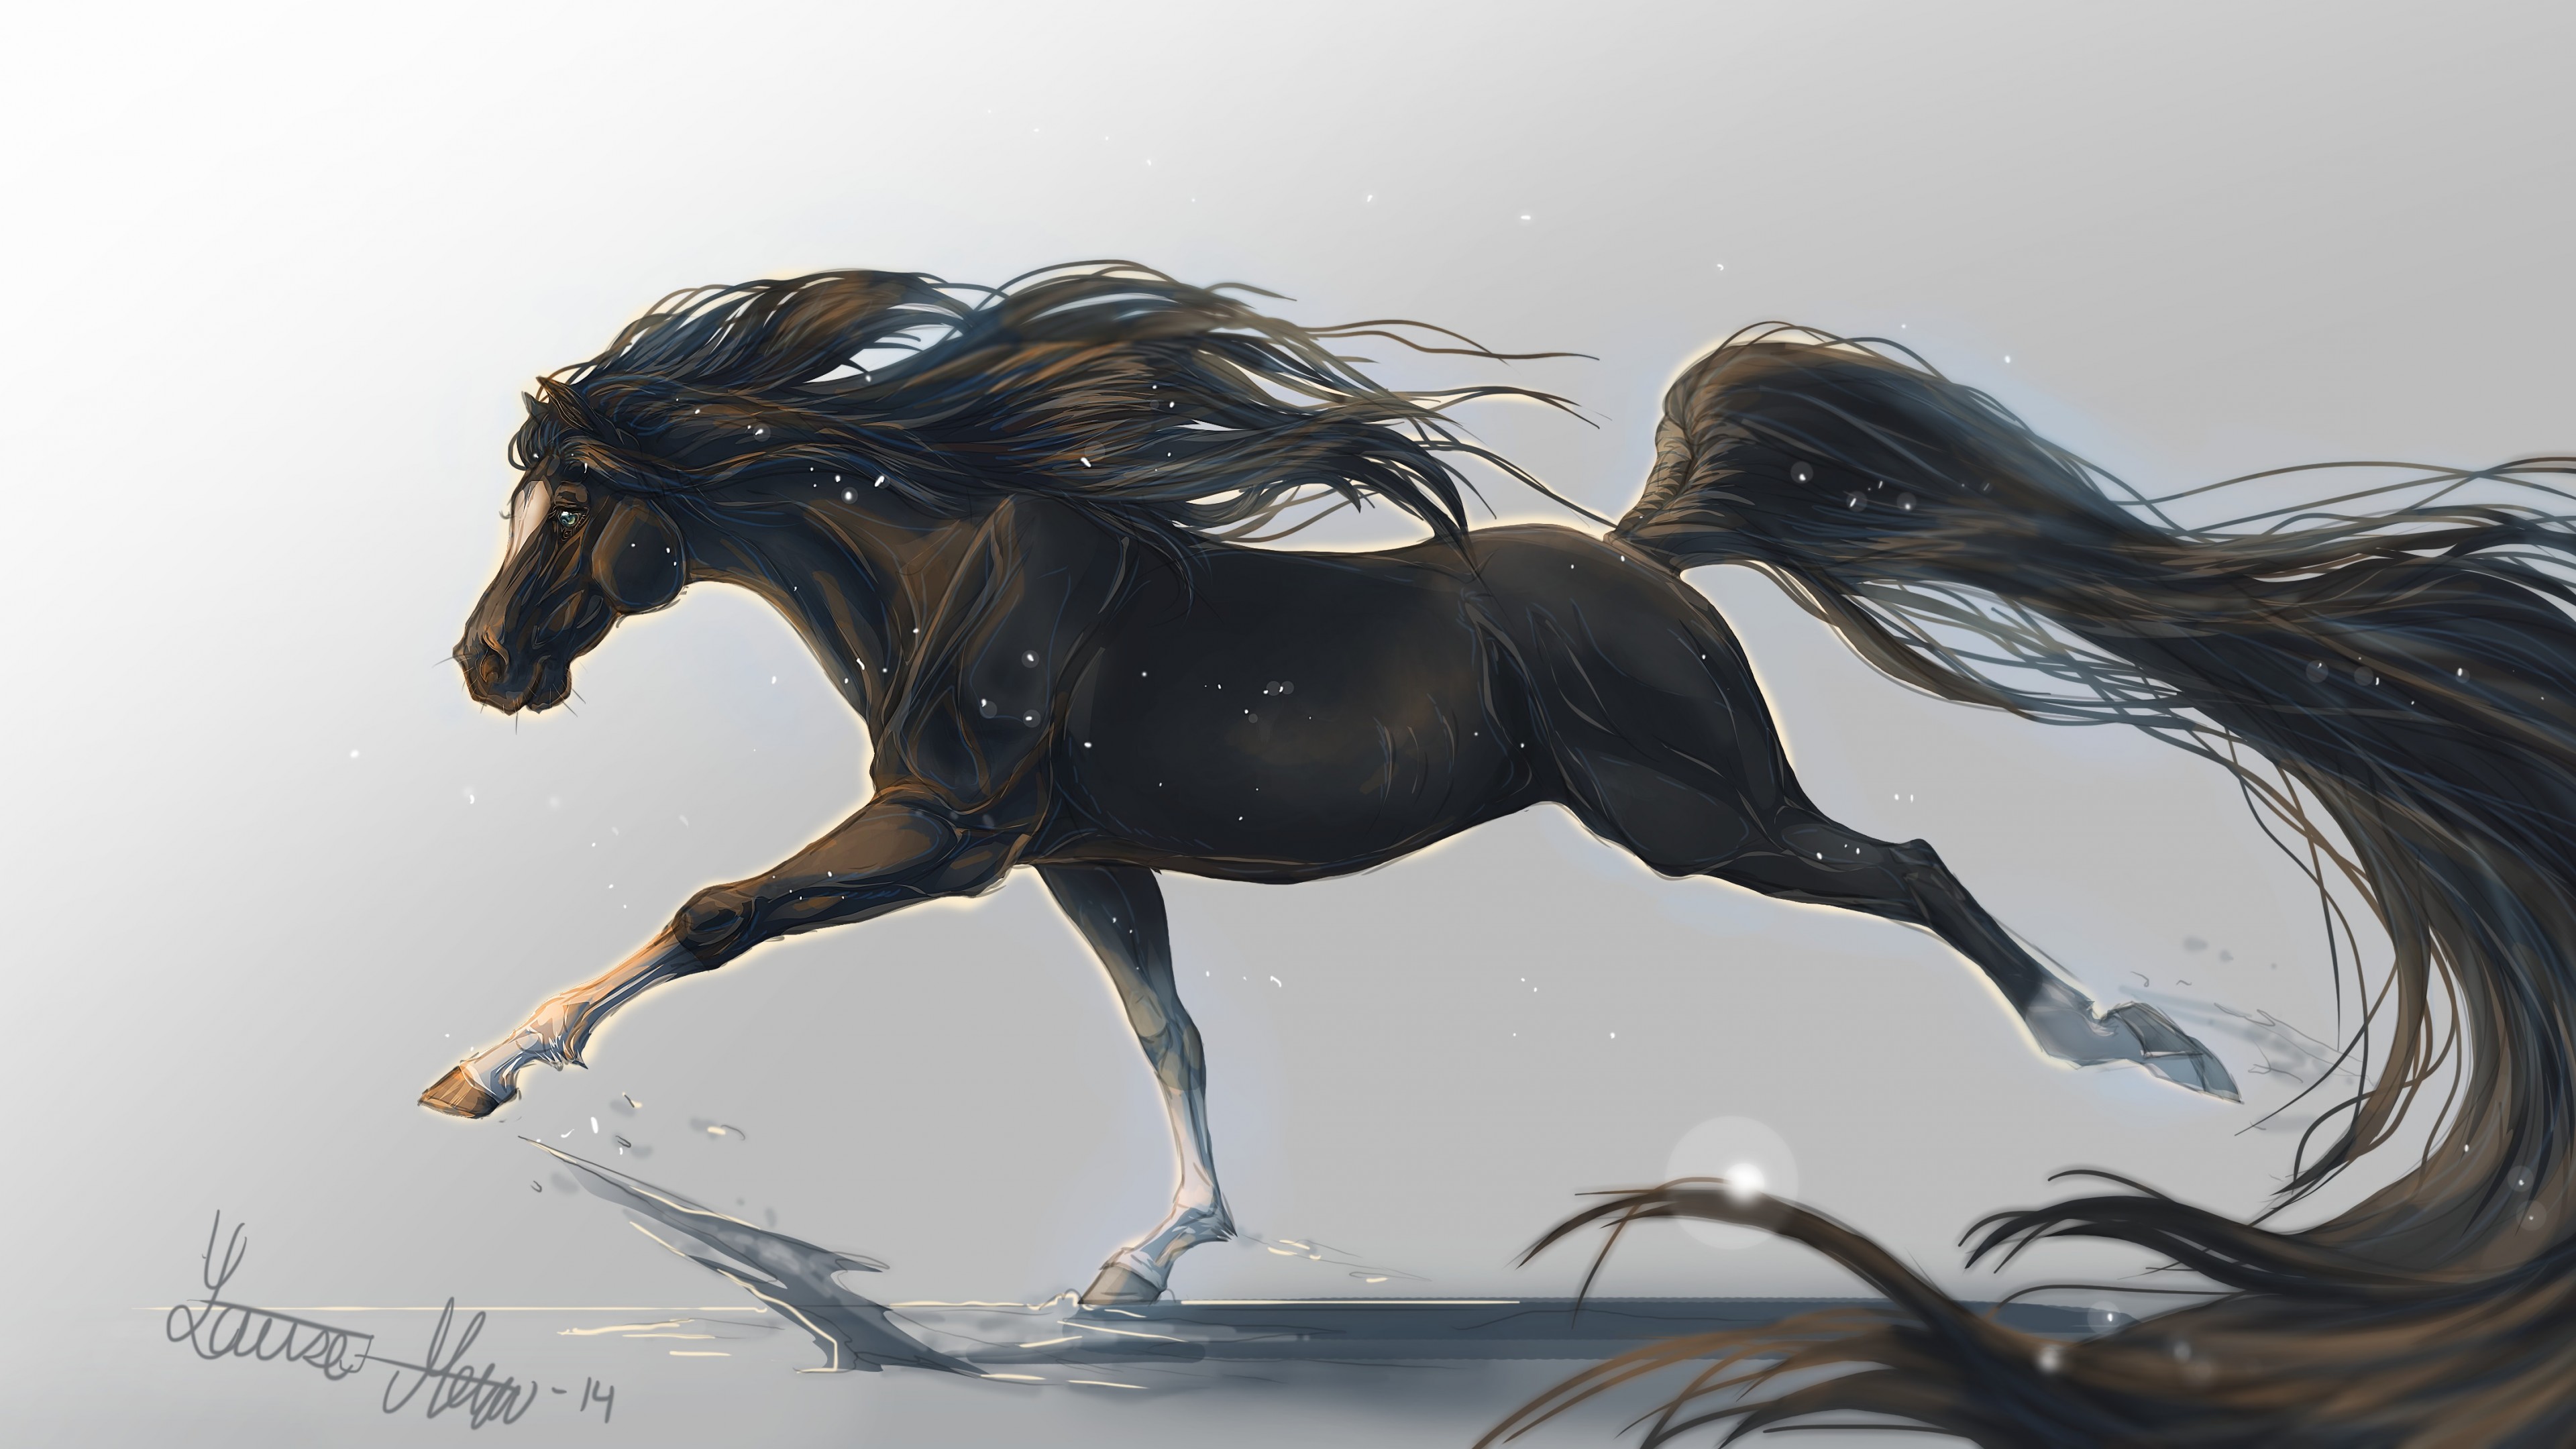 Wallpaper Horse Hooves 5k 4k Mane Galloping Black